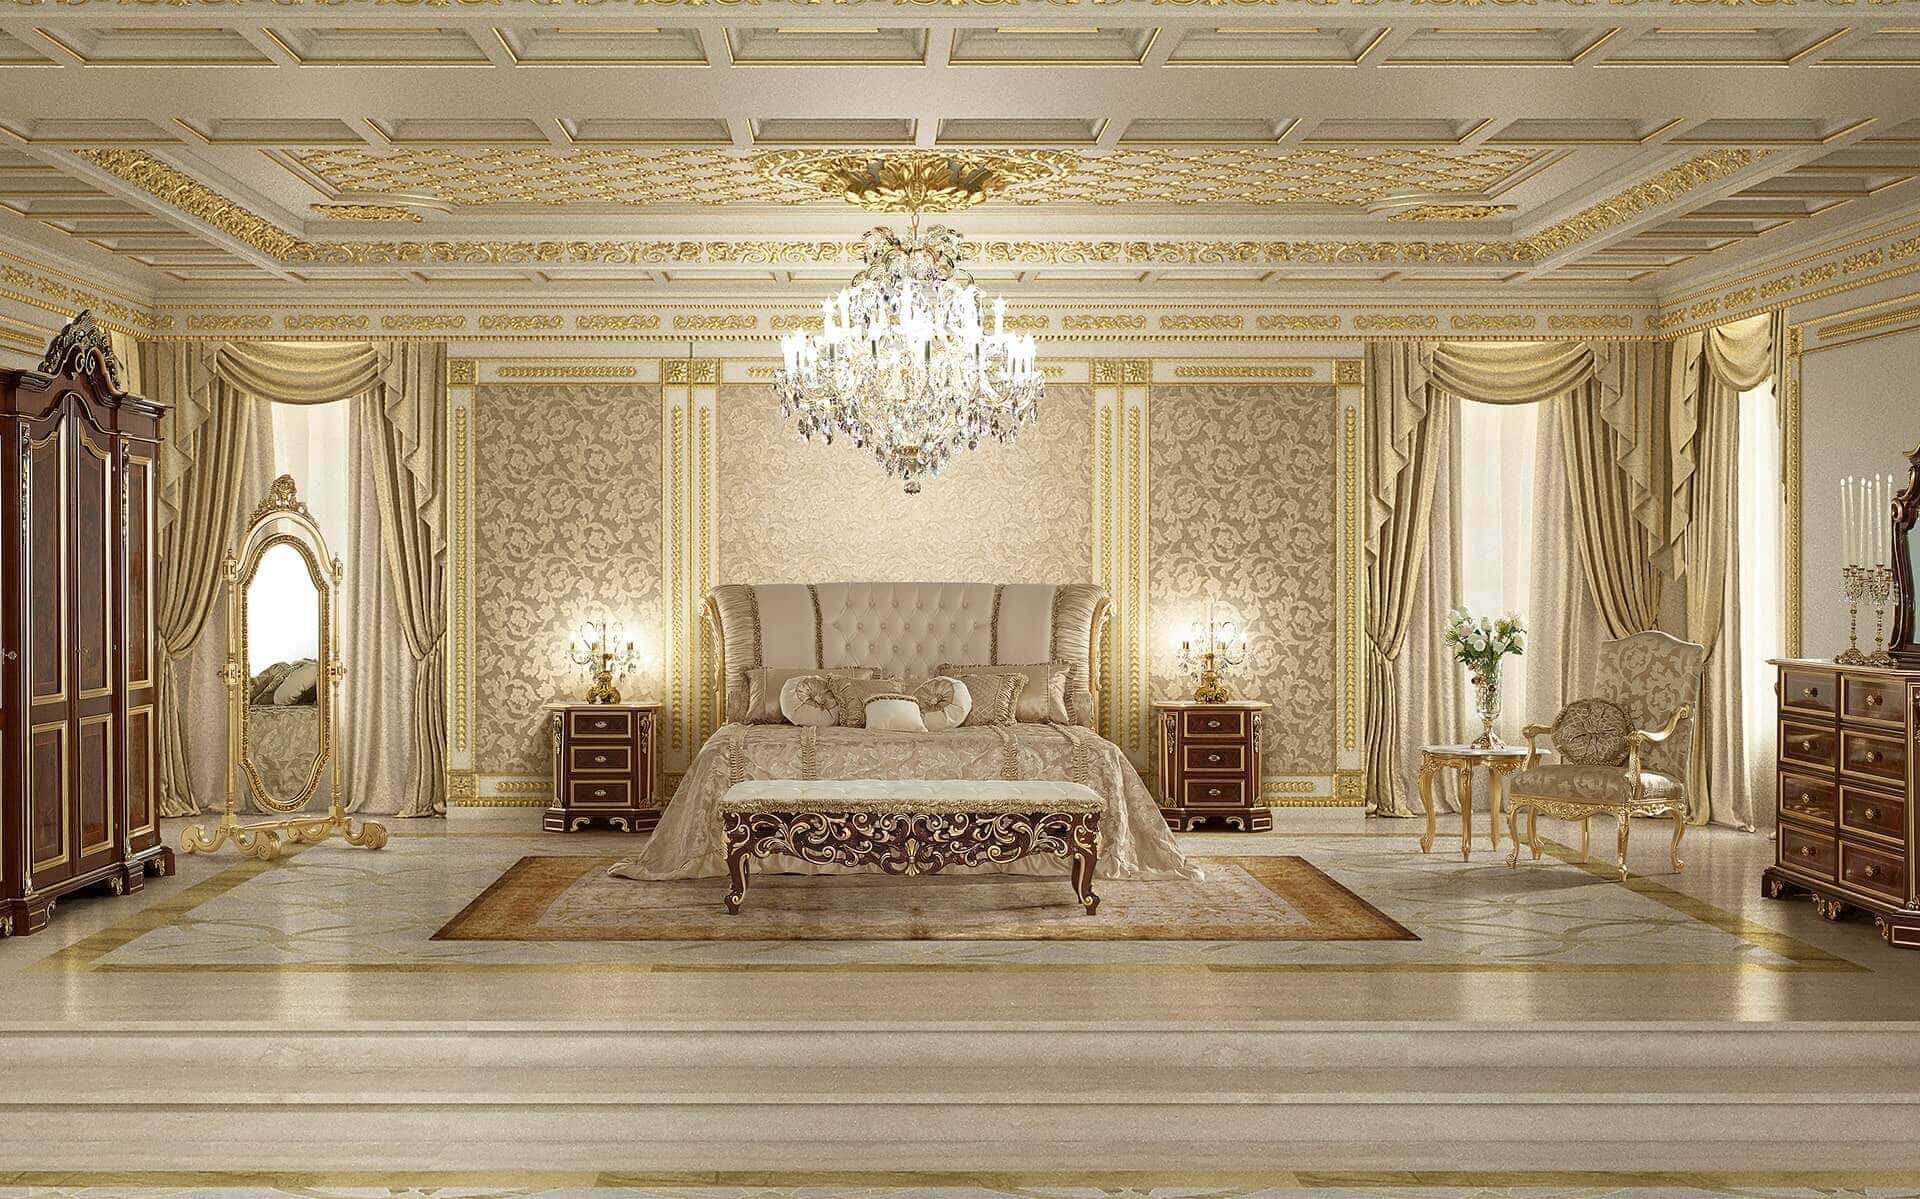 Спальные комнаты в роскошном итальянском стиле барокко классике венецианский стиль. Элитные спальни на заказ королевские кровати с балдахином классический стиль спальни эксклюзивная итальянская мебель на заказ дизайн интерьера королевской спали. Красивые элегантные спальни в королевском дворцовом стиле на заказ элитные производители мебели из италии дизайн интерьера спальни в венецианском стиле спальни из дворца